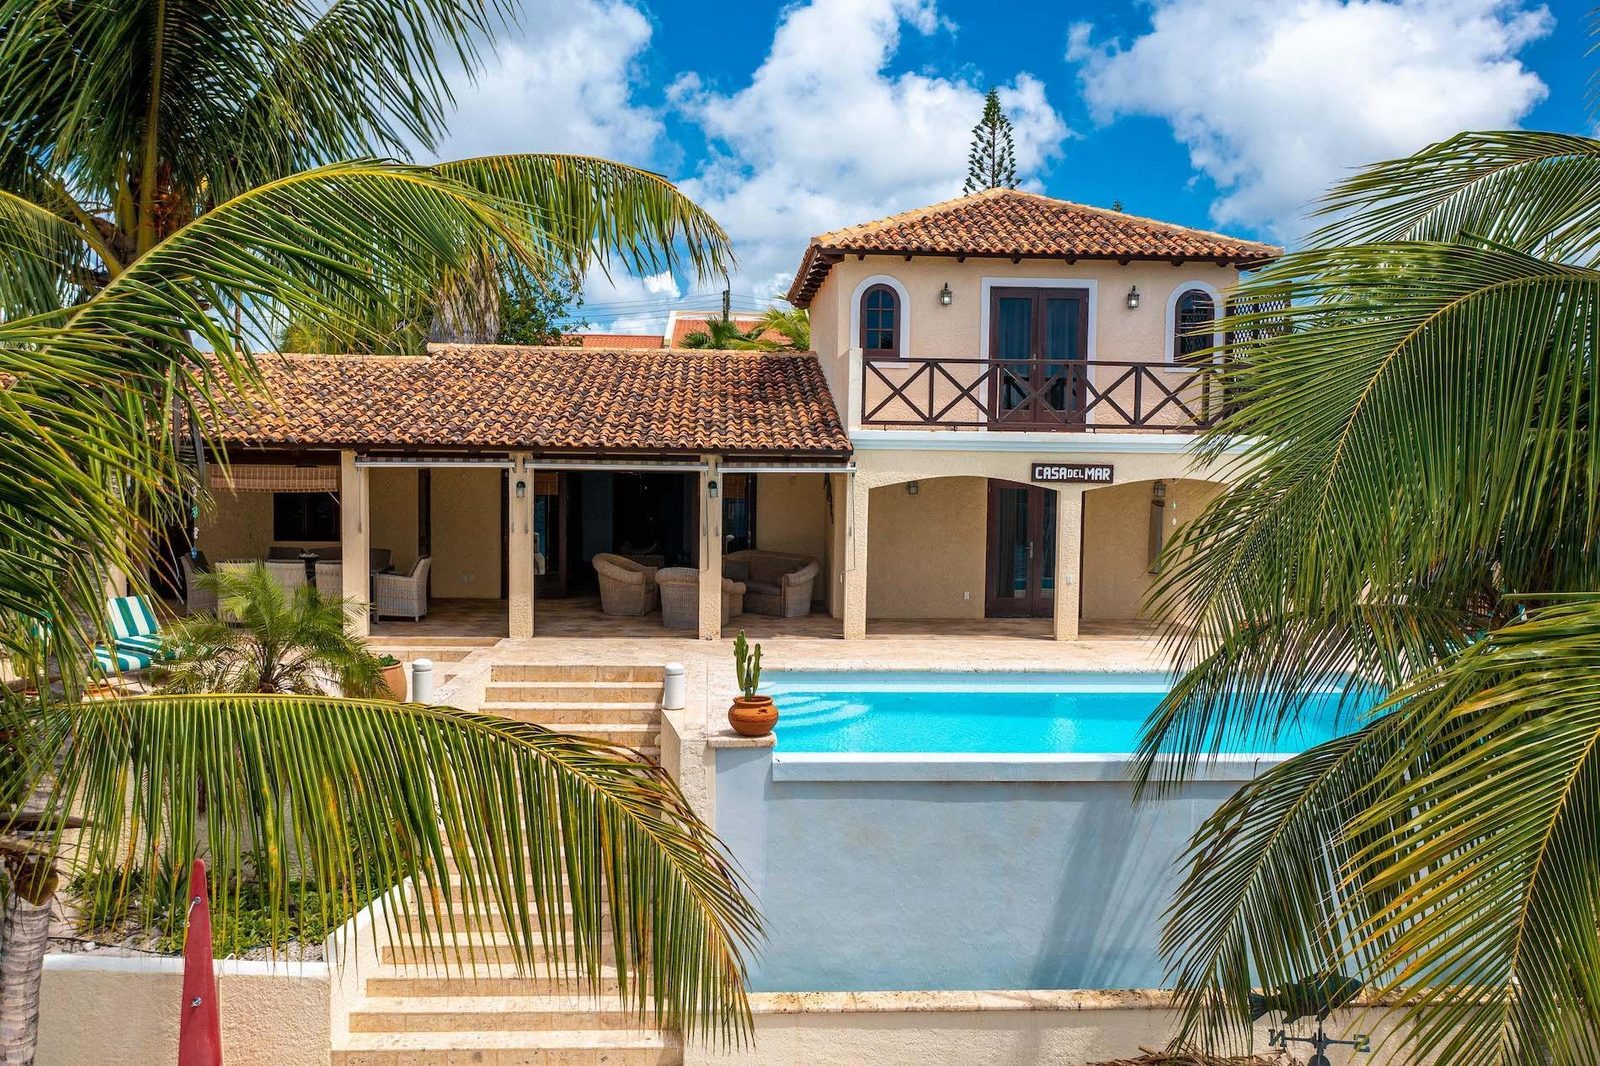 Casa Del Mar - Luxury villa with private beach